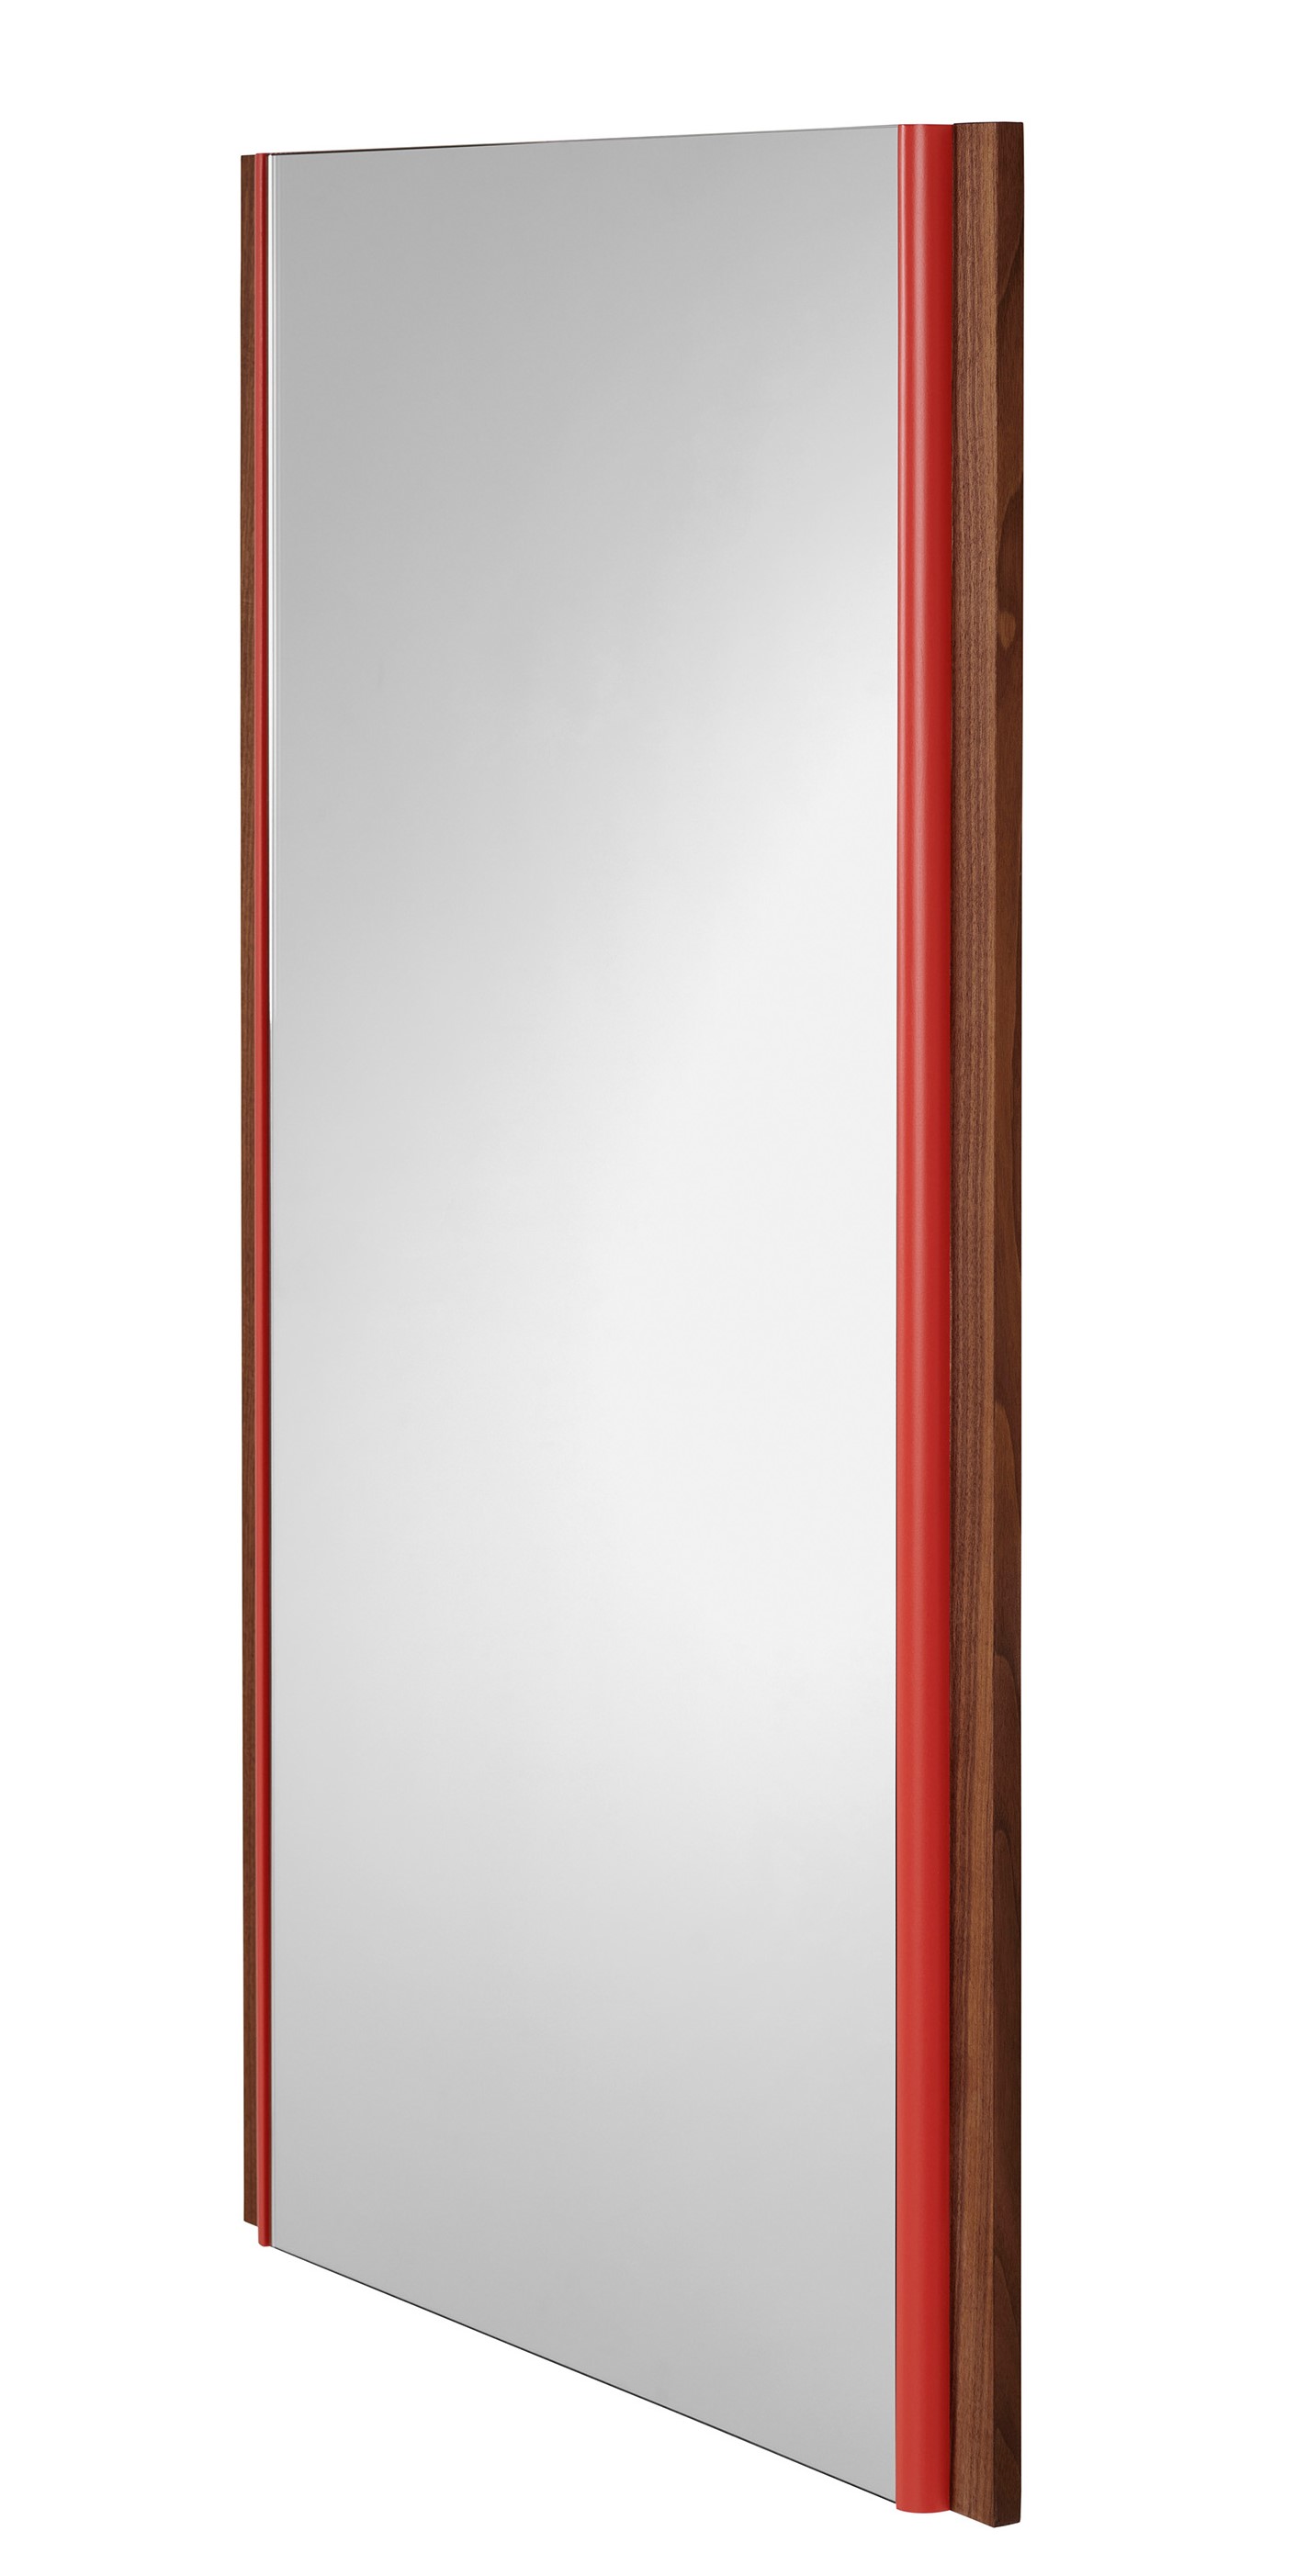 SCHÖNBUCH - Zrcadlo KORO - různé velikosti